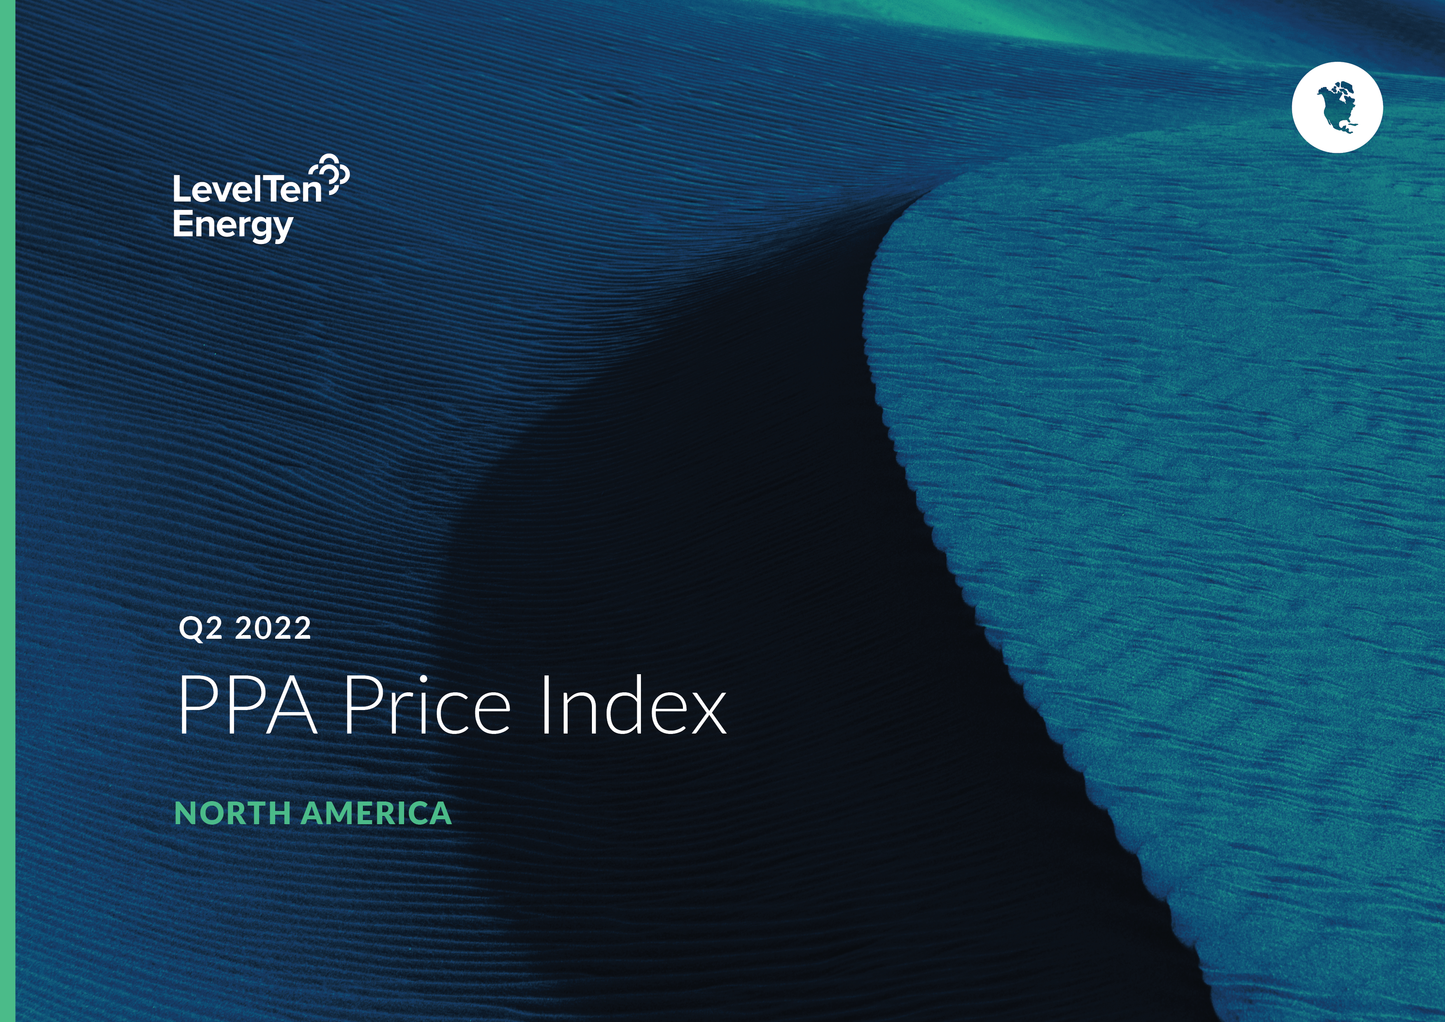 Q2 2022 PPA Price Index - North America